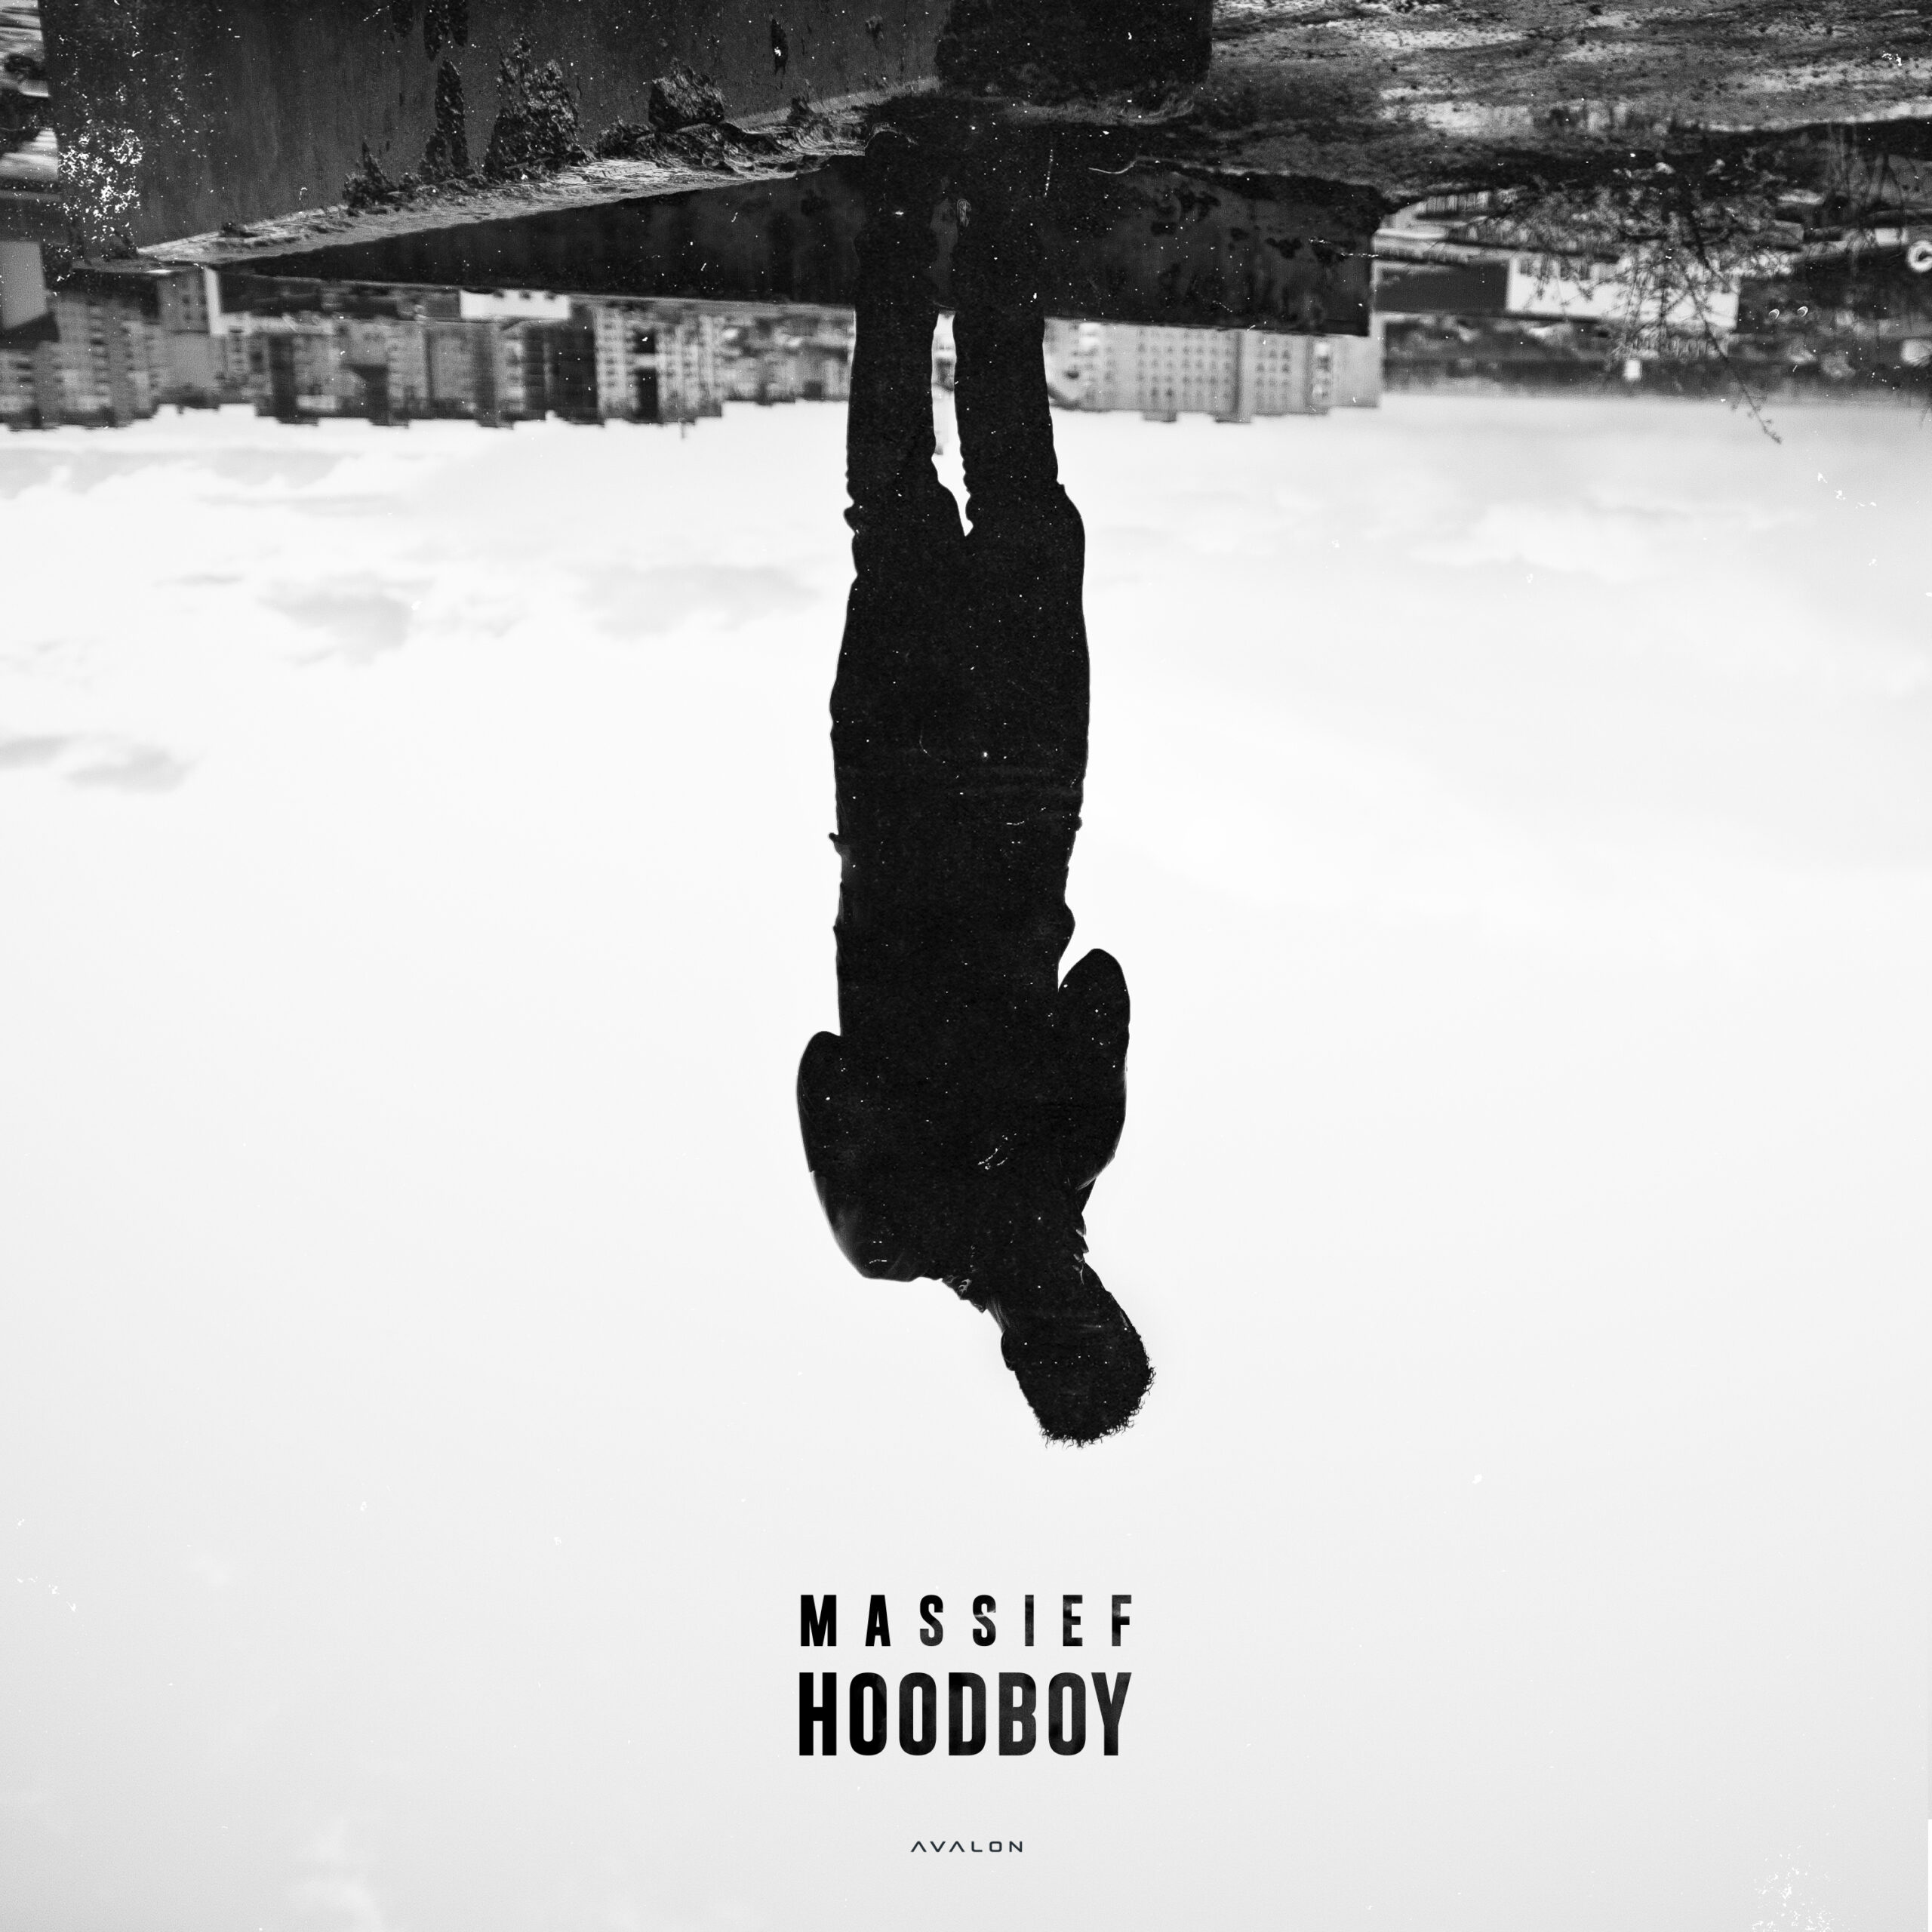 Aanstaande vrijdag komt de nieuwe single “Massief – Hoodboy” uit! 💣🔥